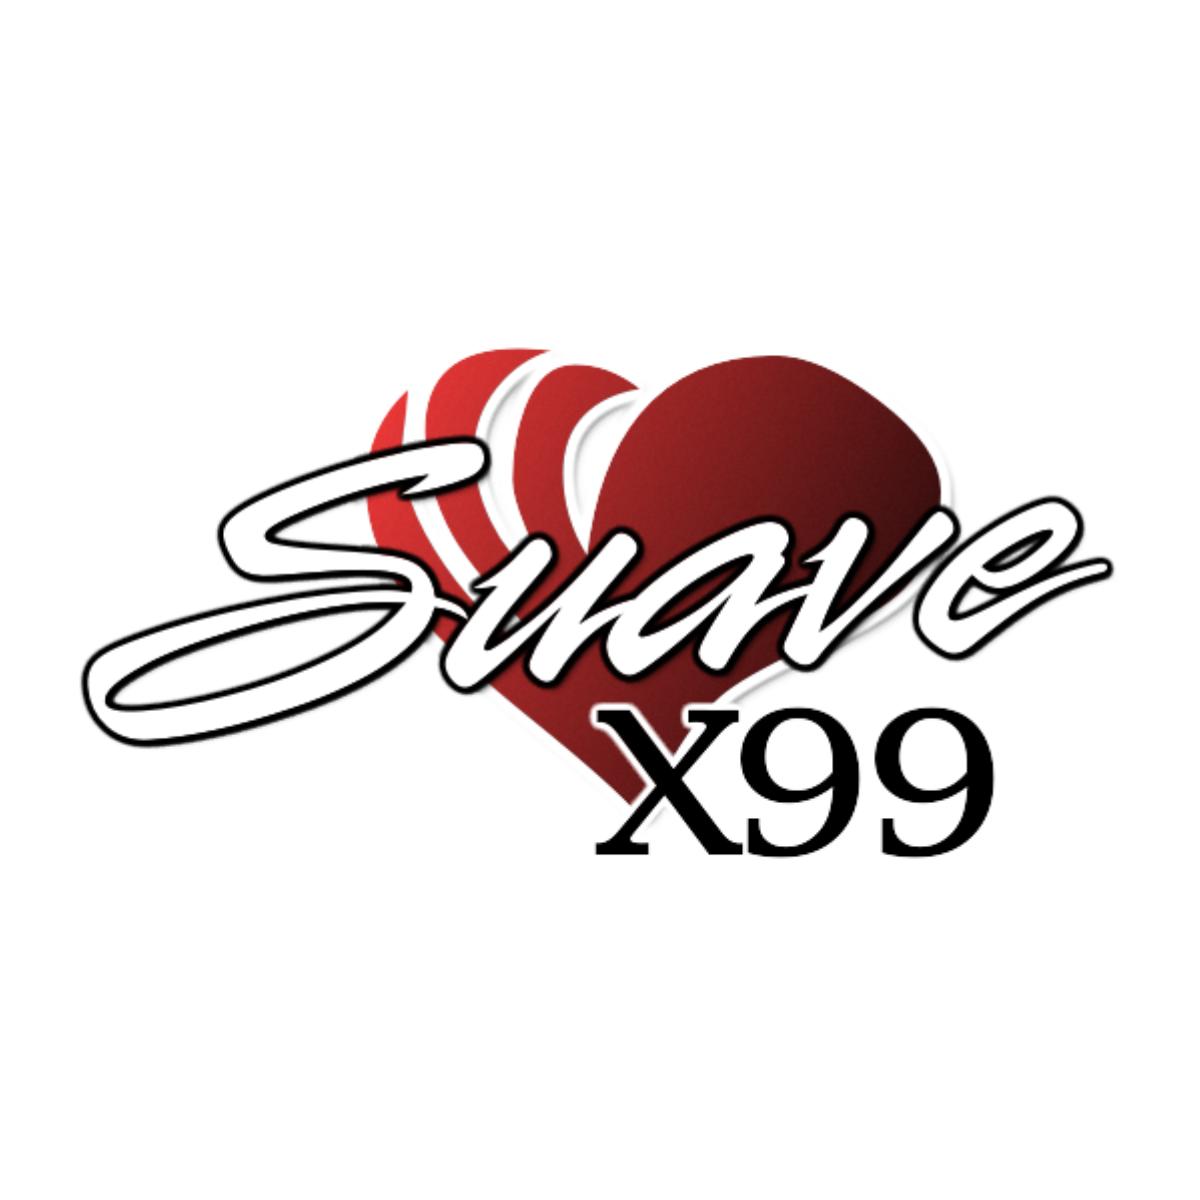 Listen to Suave X99 - Siempre Contigo!